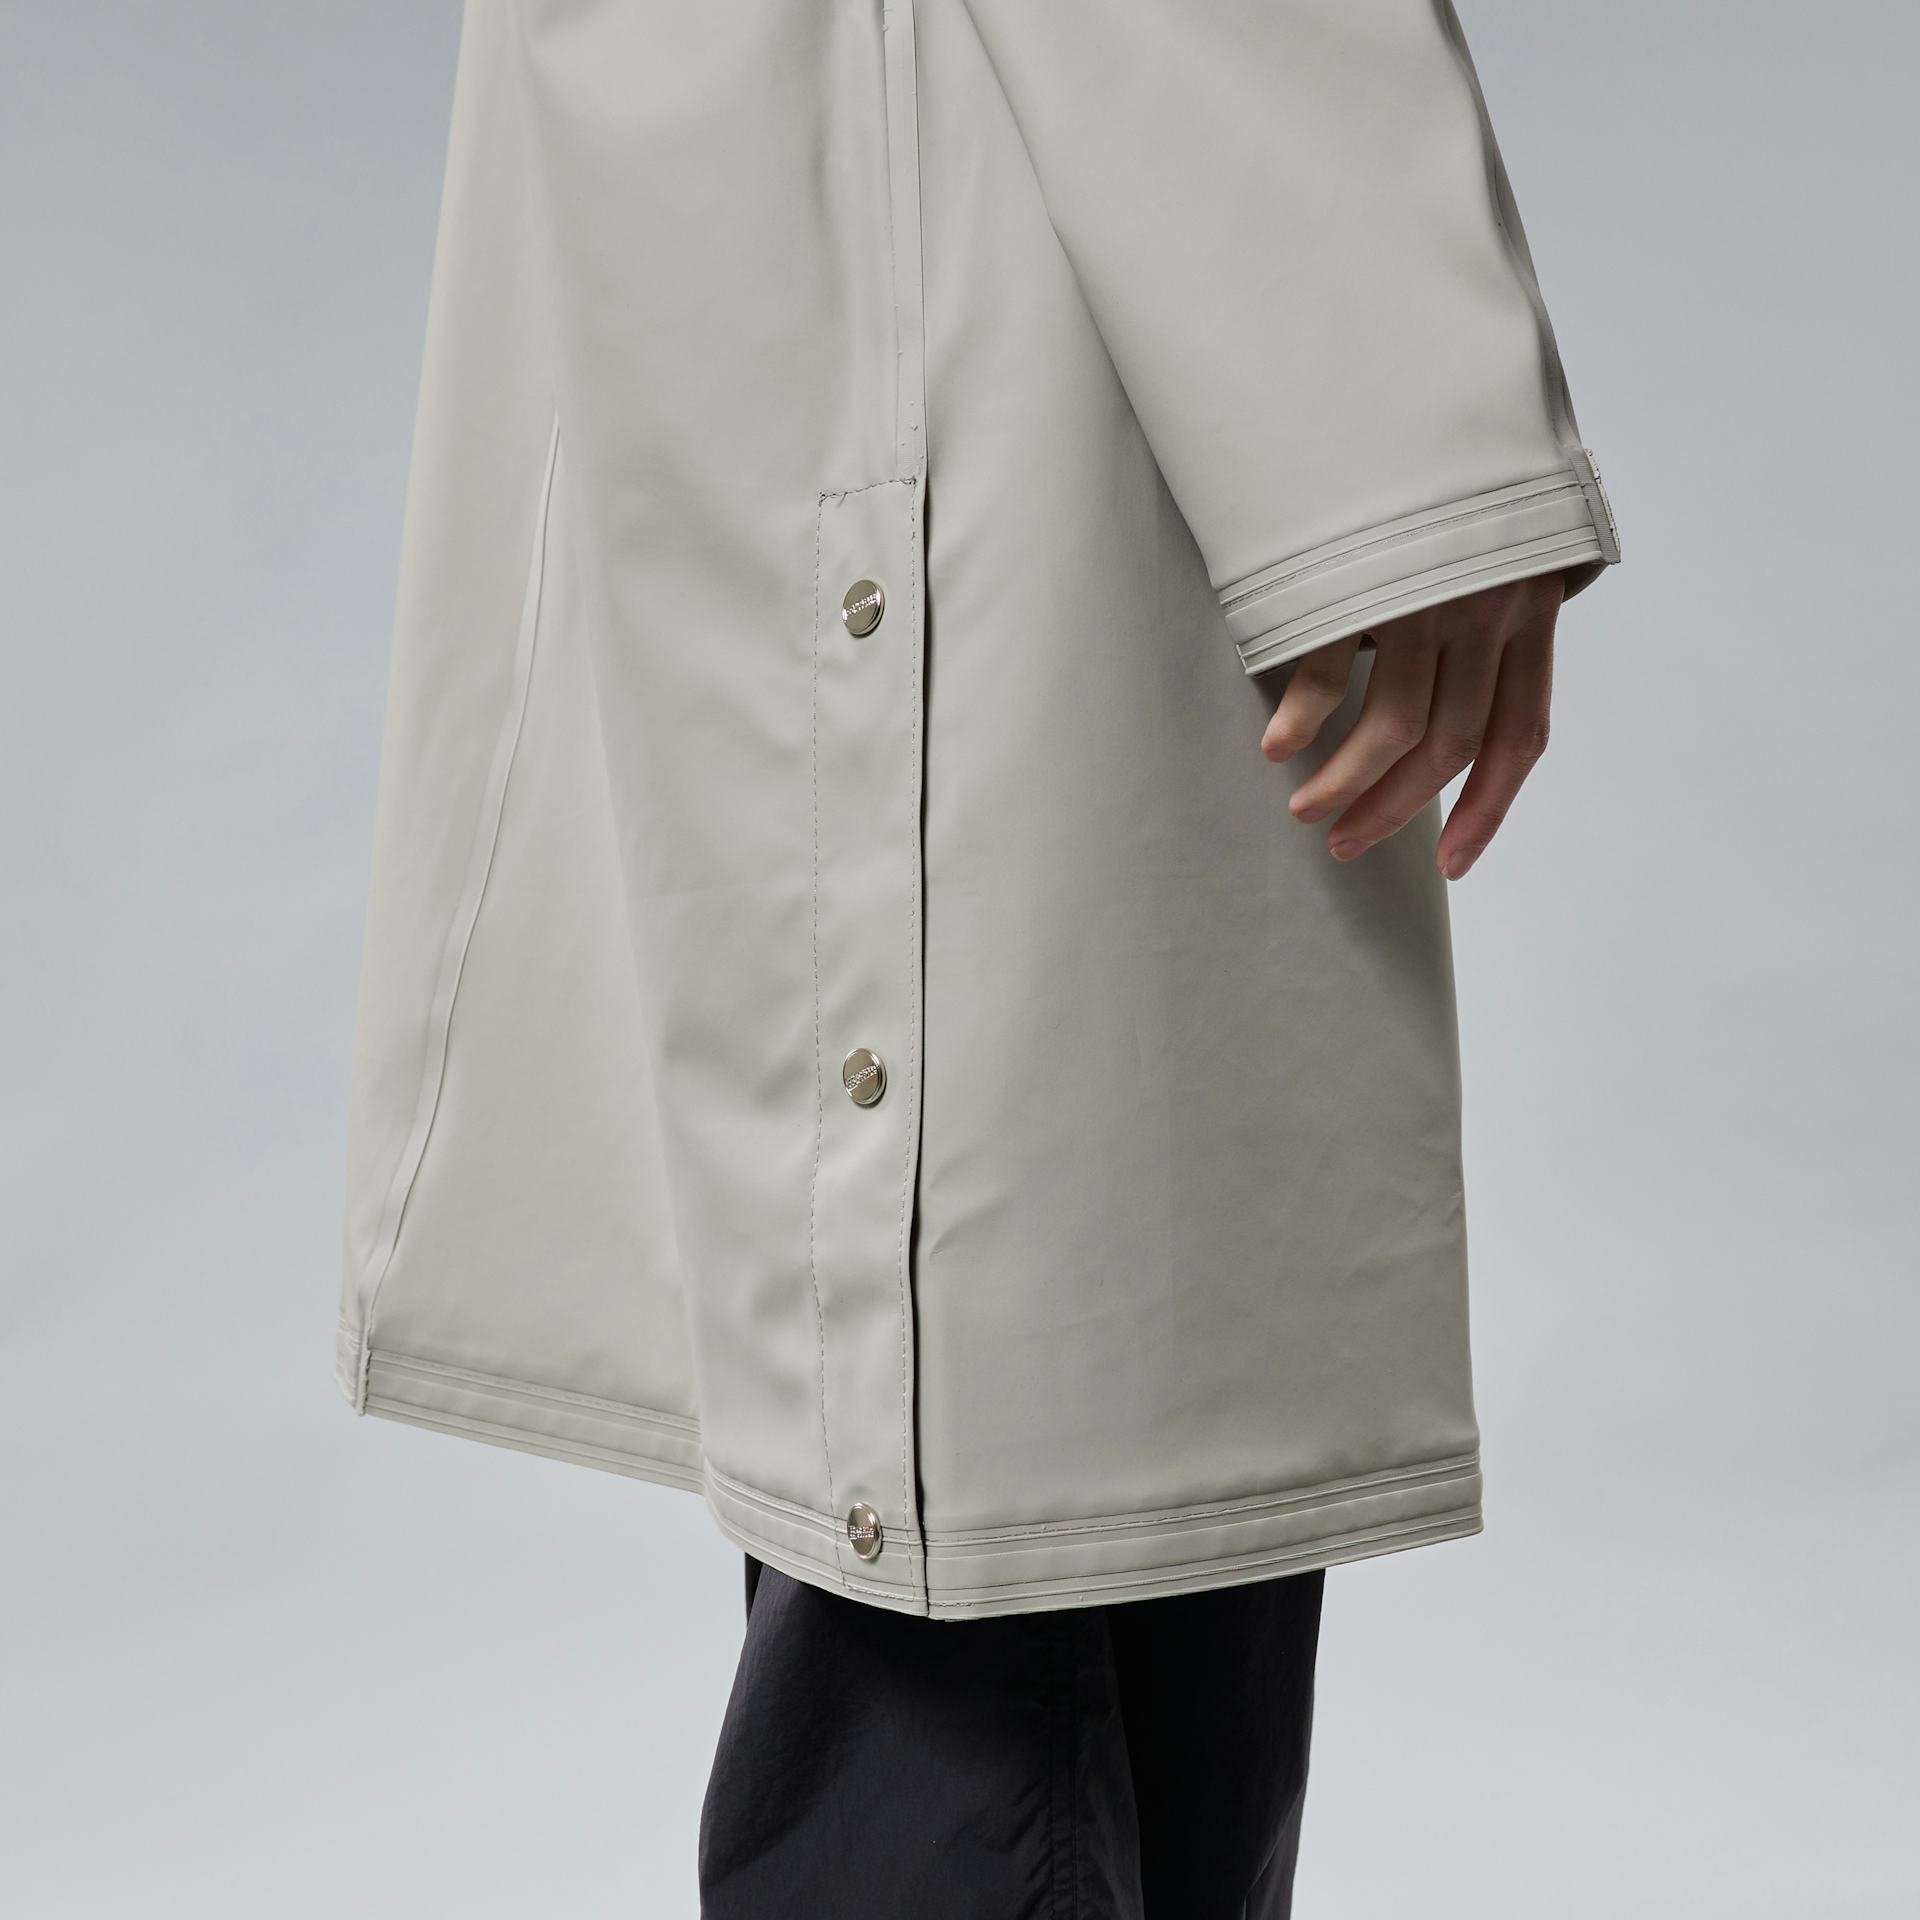 Skipagata Hooded Rain Coat